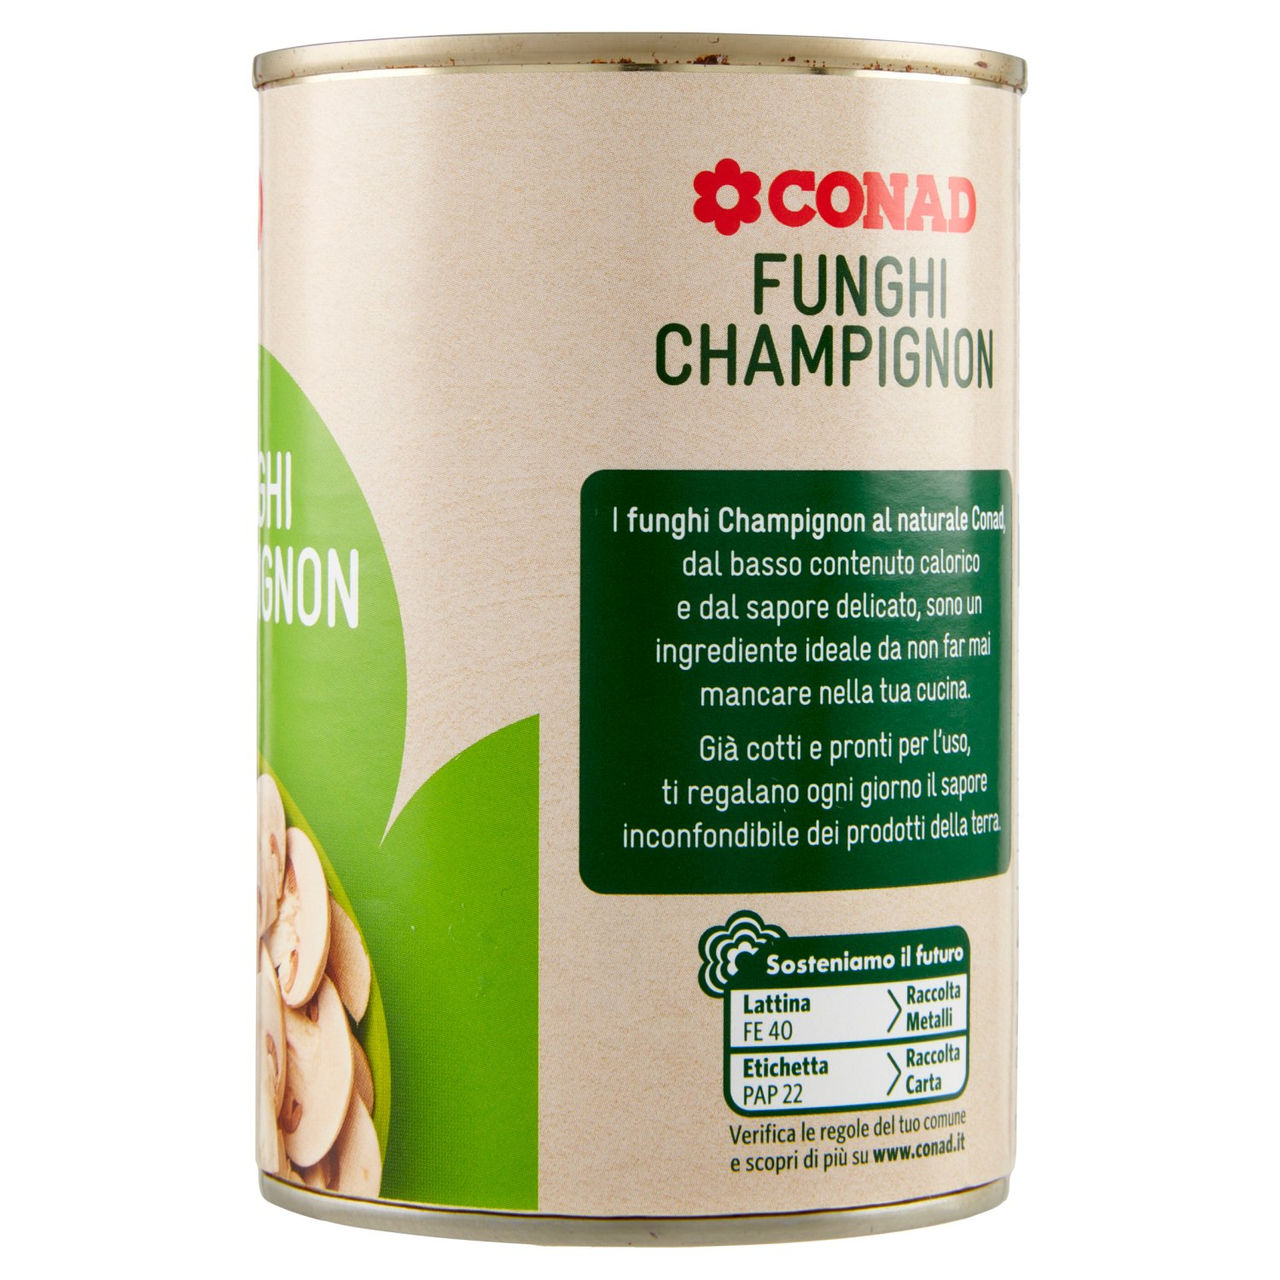 Funghi Champignon 400 g Conad online